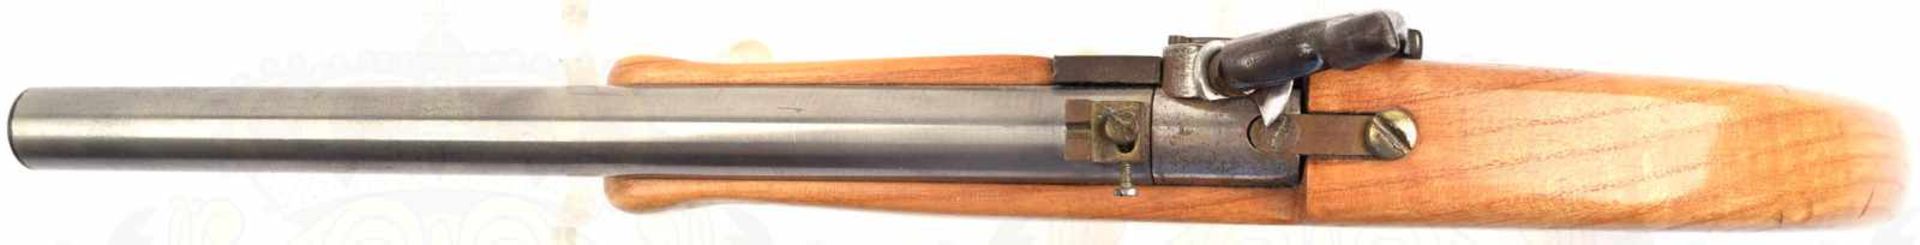 PERKUSSIONS-MODELLPISTOLE, glatter Rundlauf, ca. Kal. 9mm, Schloßteile Eisen u. Messing, heller - Bild 4 aus 4